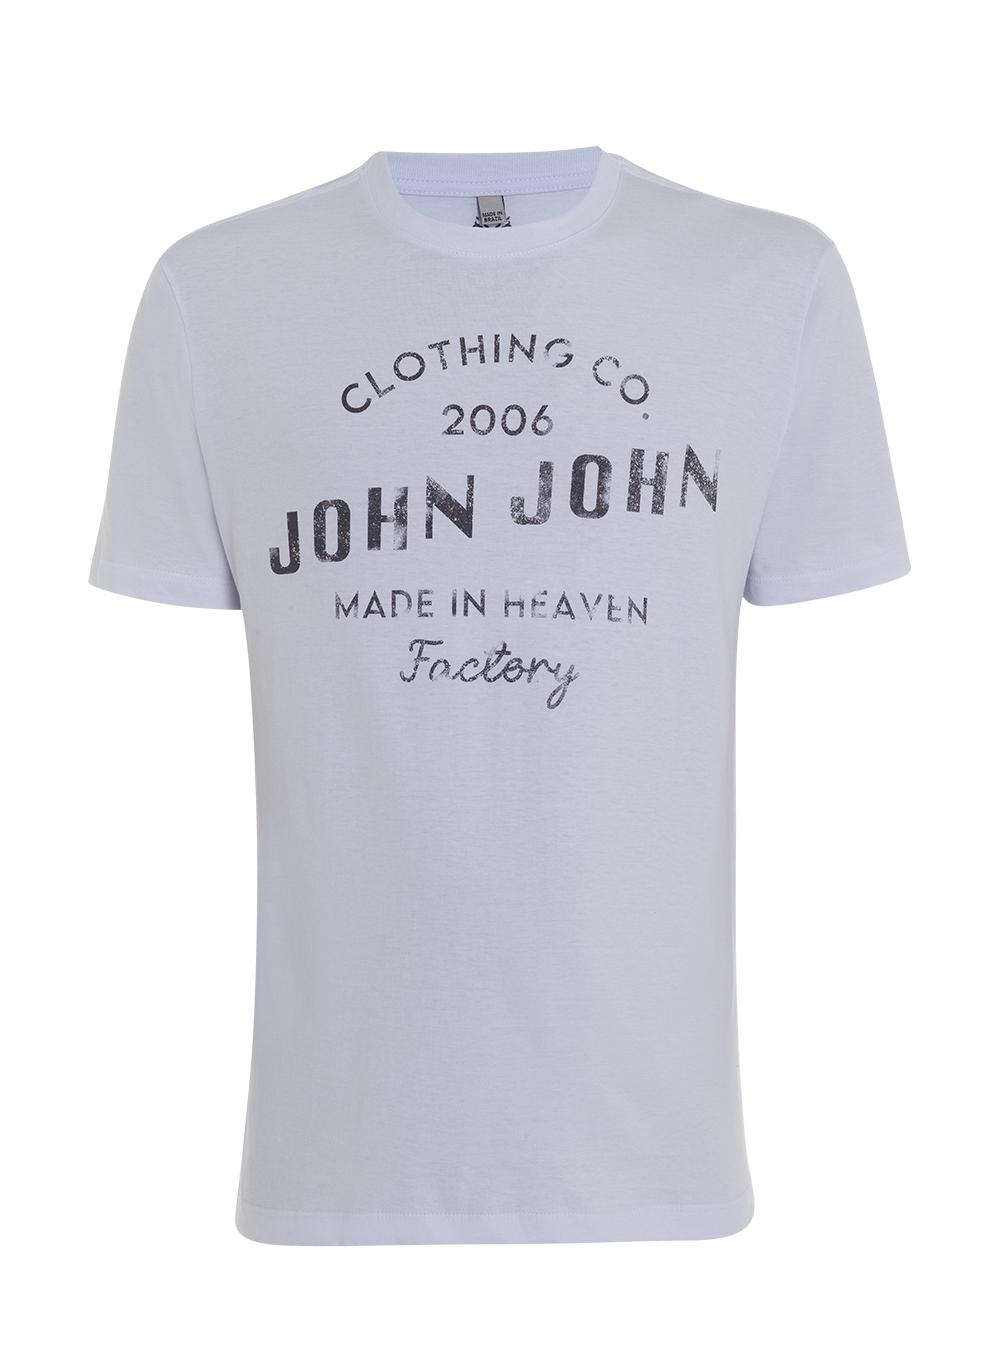 Camiseta Up Side John John Masculina 42.54.4944 - Camiseta Up Side John  John Masculina - JOHN JOHN MASC